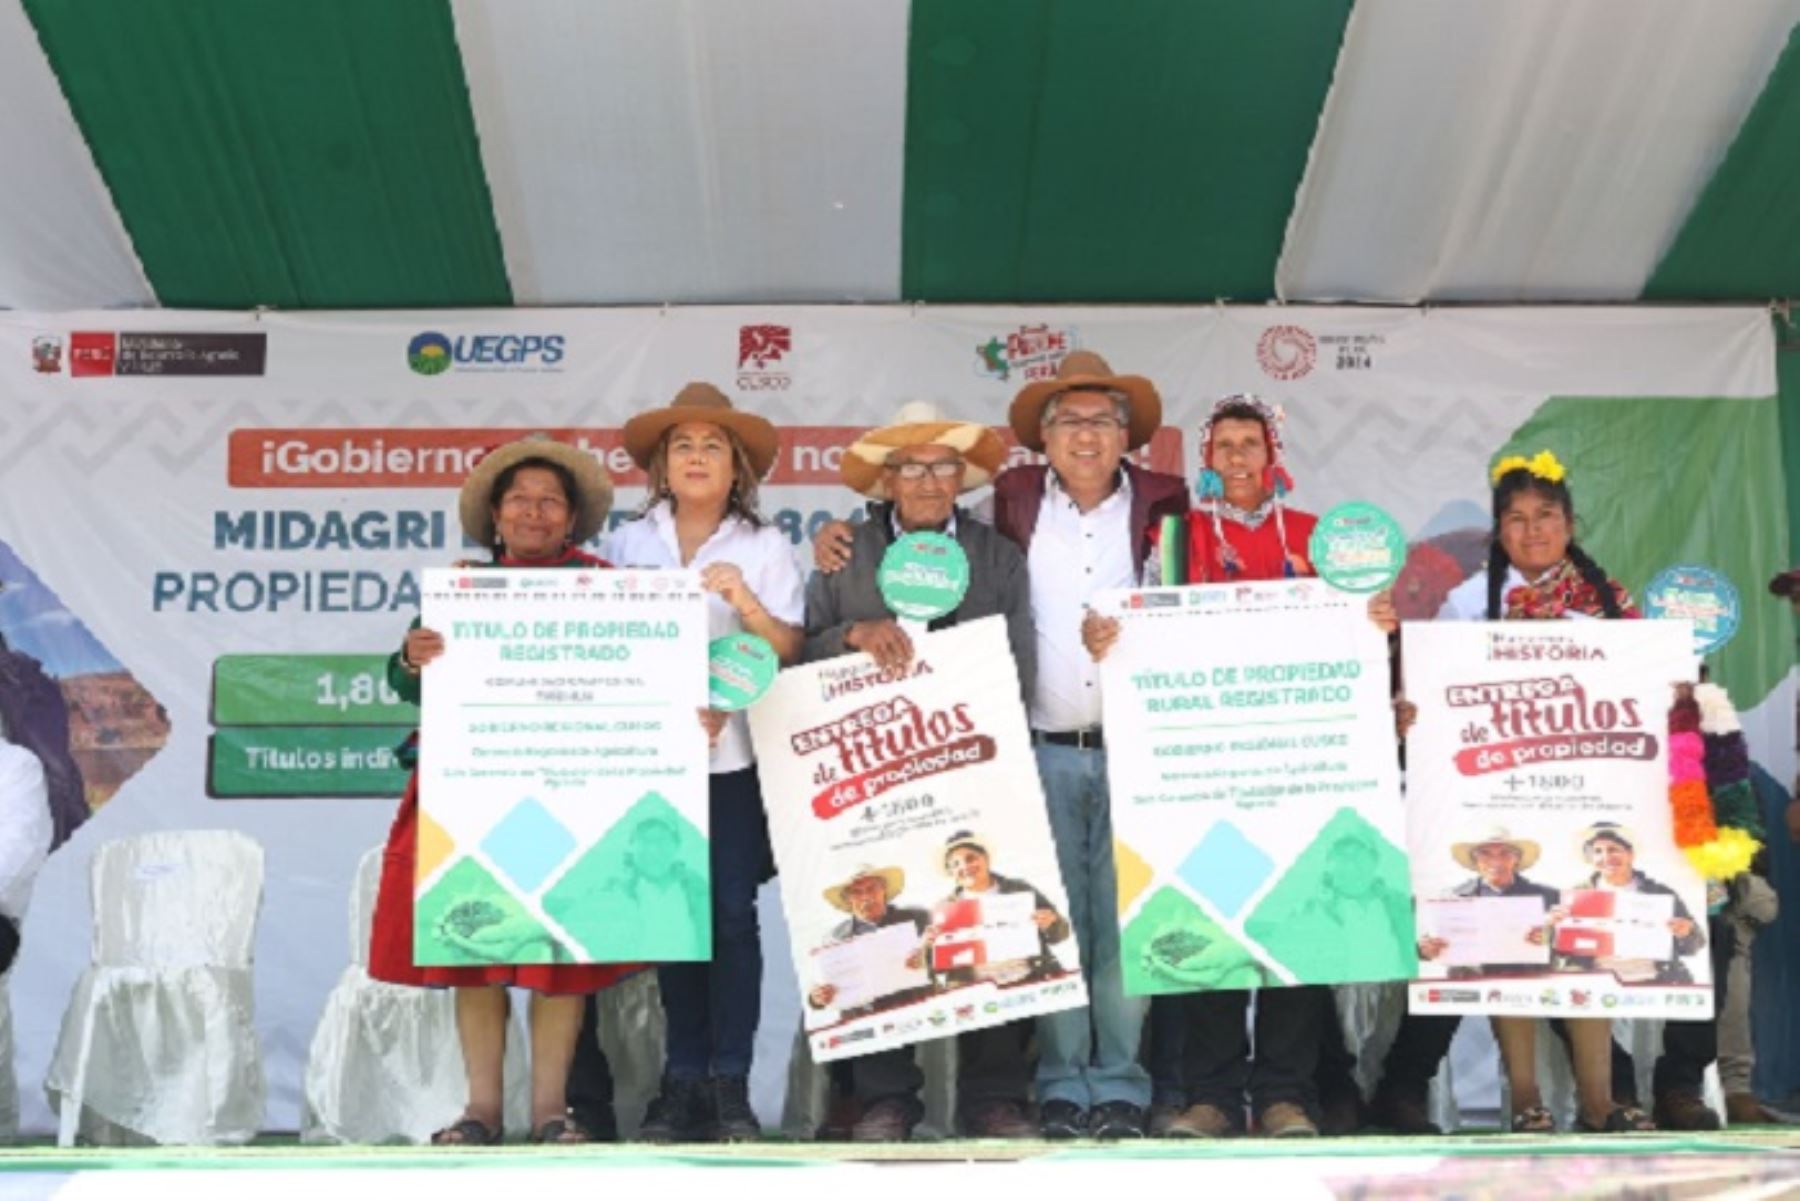 La ministra Jennifer Conrteras entregó hoy más de 1,800 títulos de propiedad rural en el distrito de Huaro, provincia cusqueña de Quispicanch, y uno a la comunidad campesina de Tañihua, en el distrito de Marangani, provincia de Canchis. ANDINA/Difusión